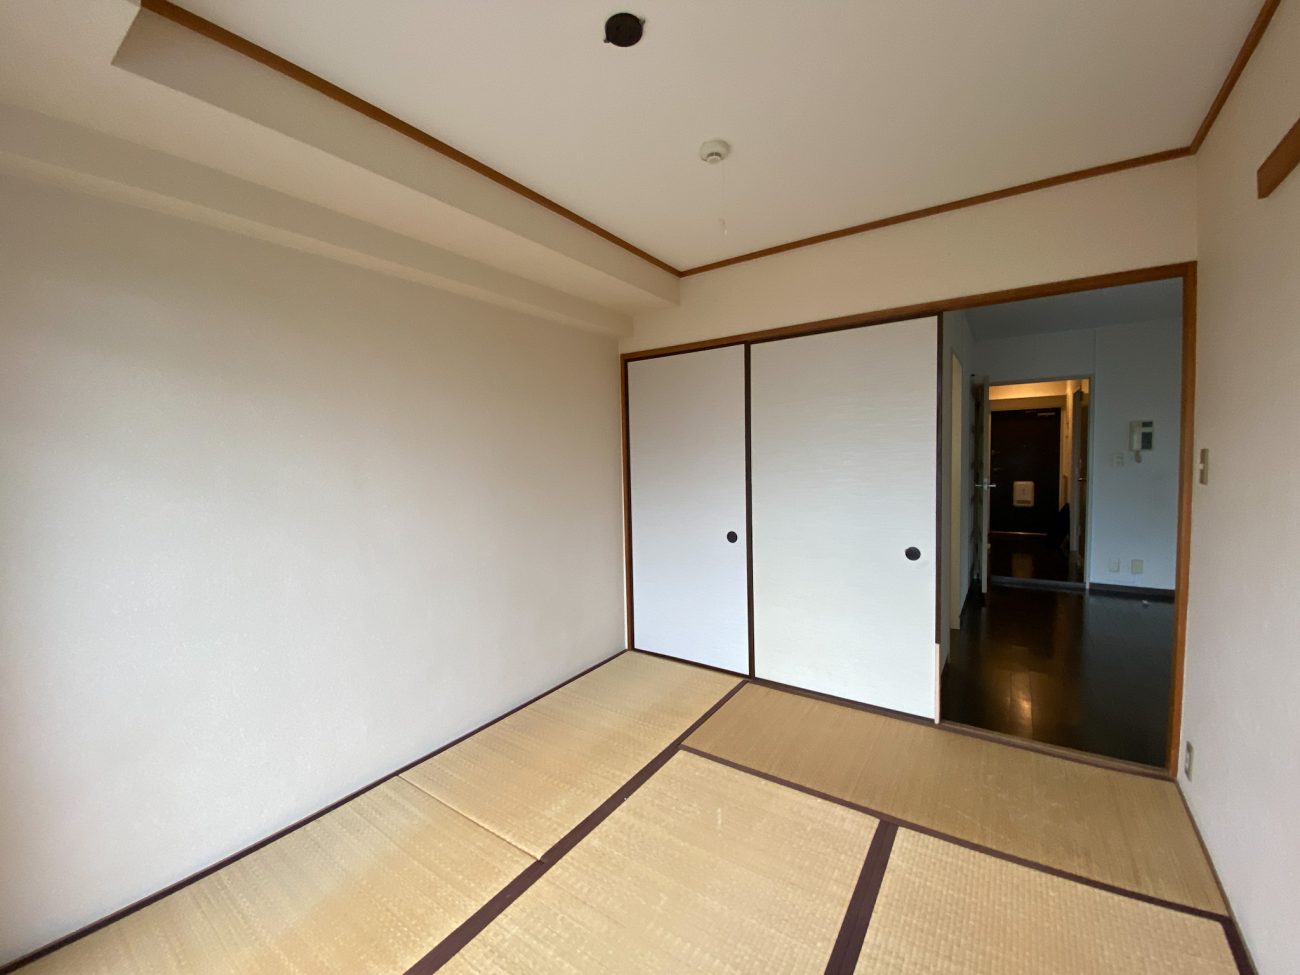 上石神井 築28年 RC 2LDK57㎡  ファミリータイプの部屋をリノベーションで完成前に入居確定の画像